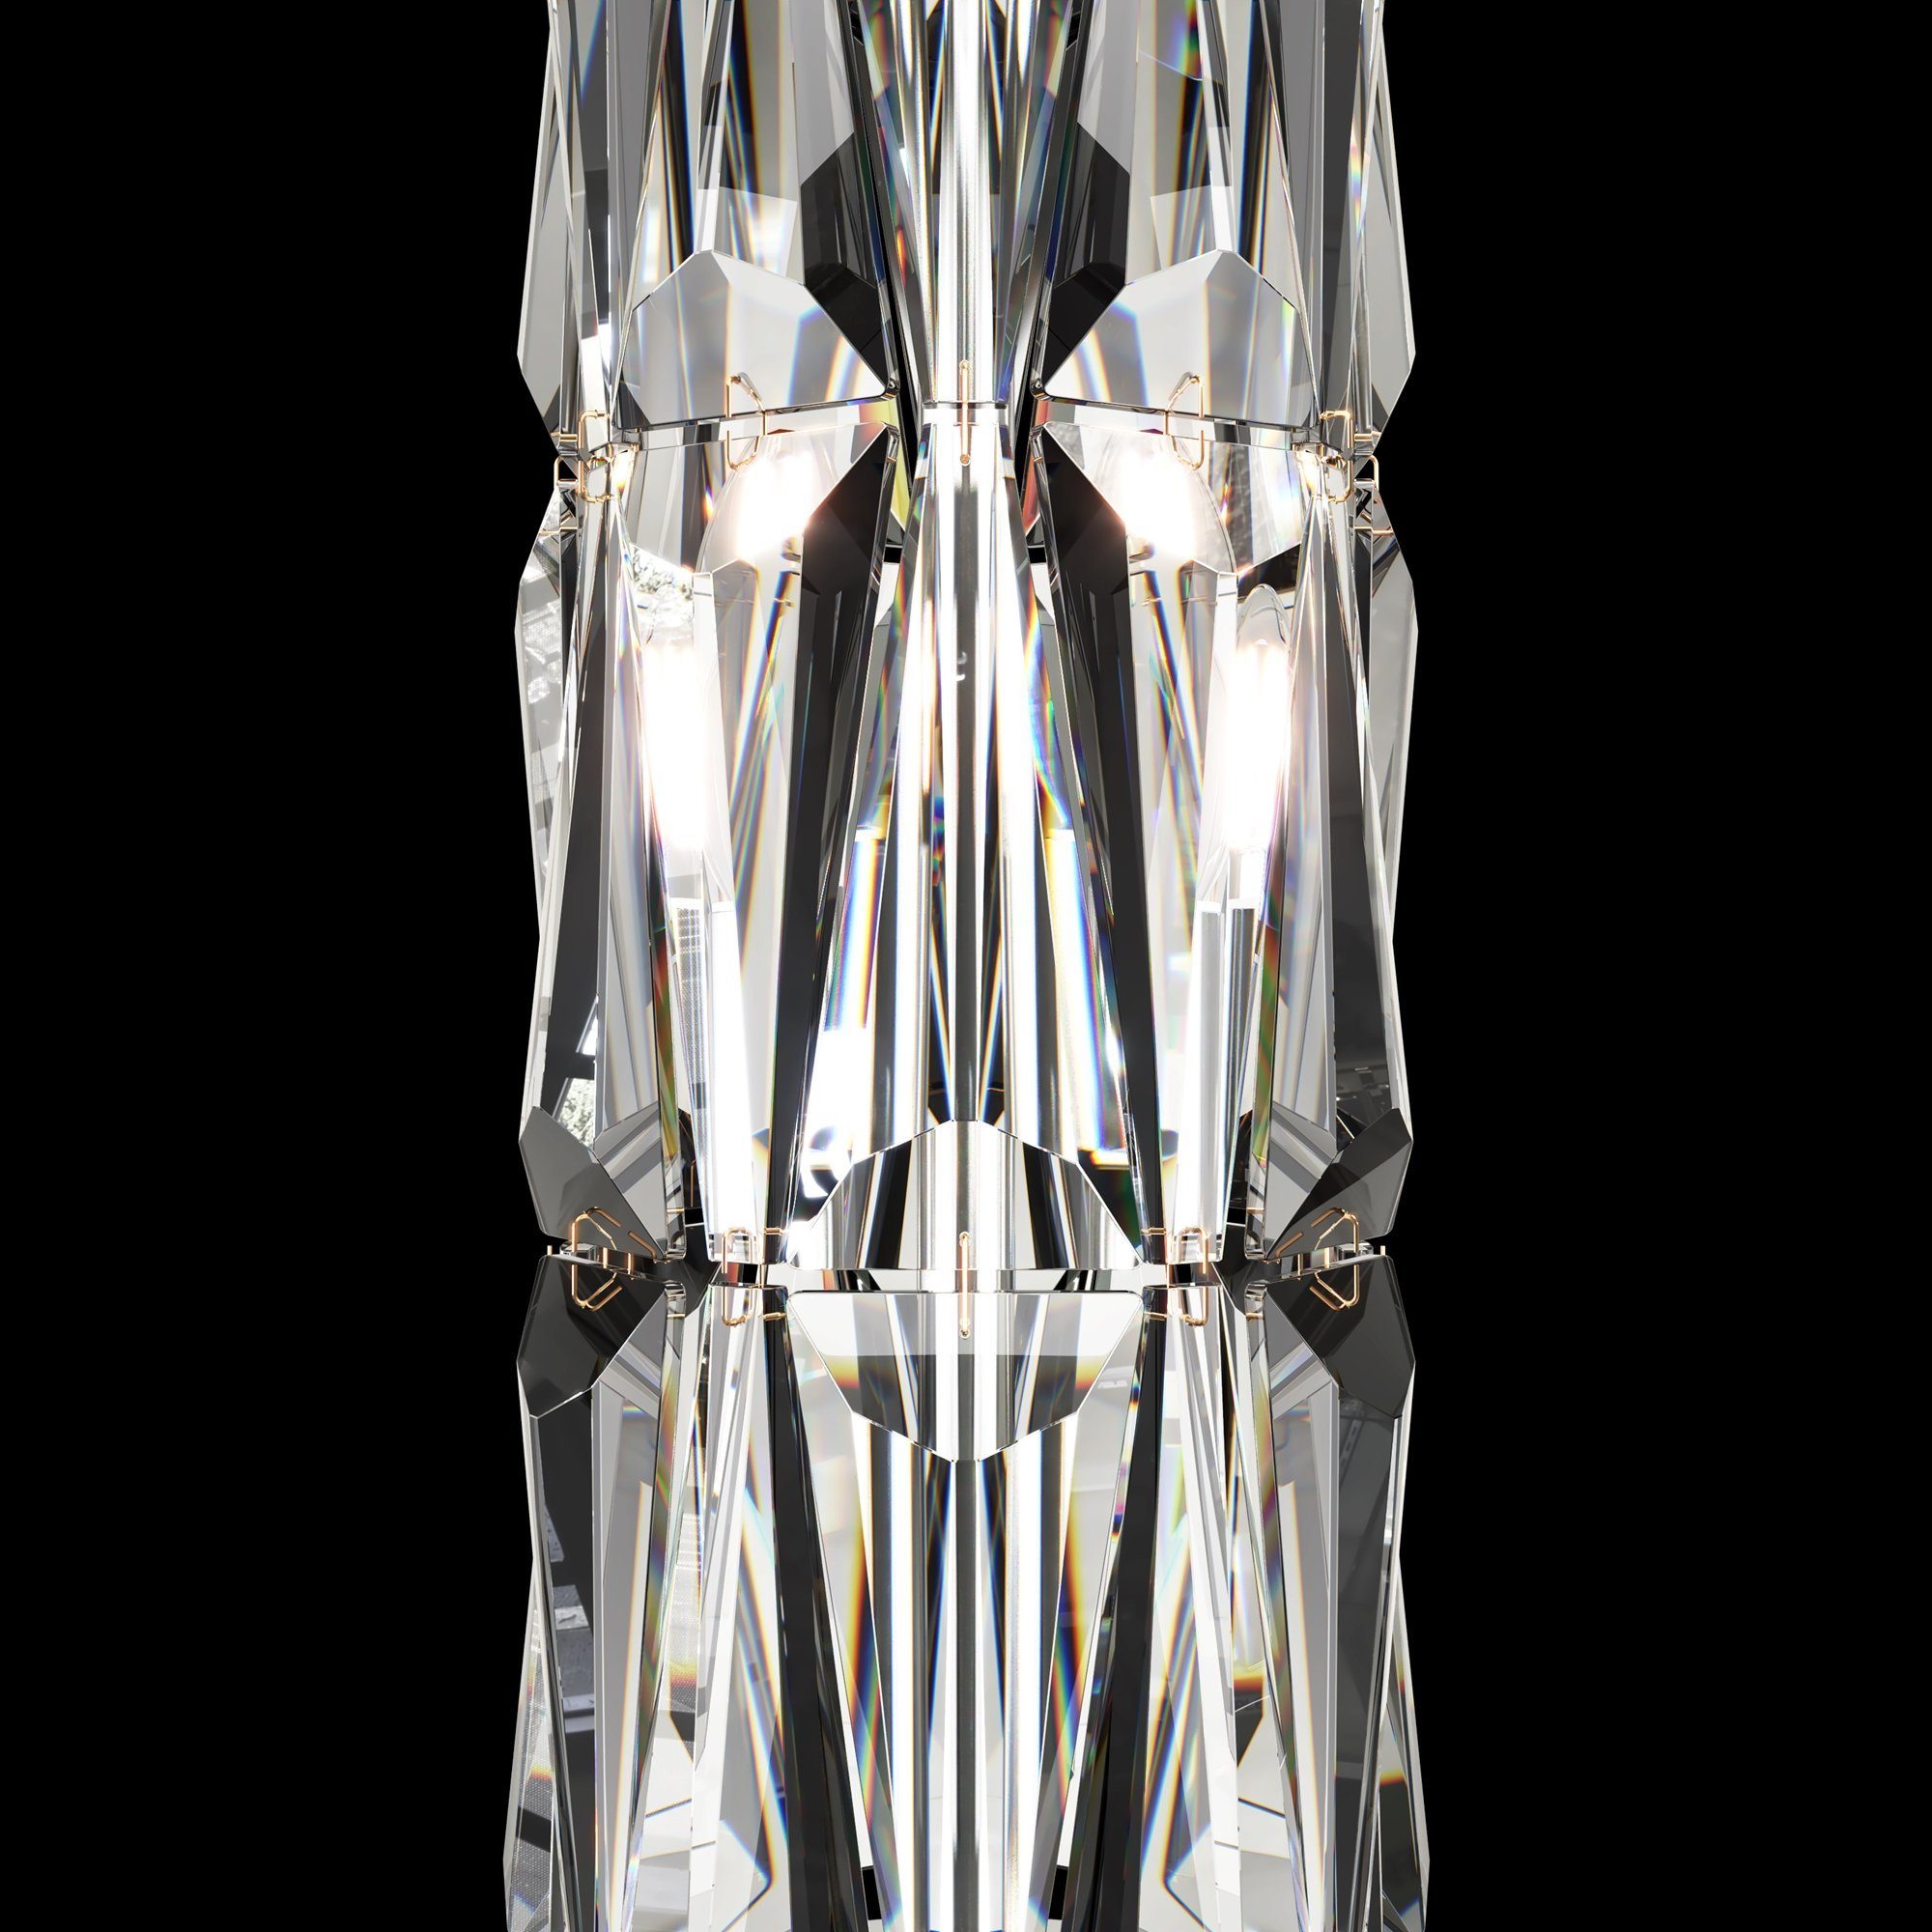 DECORATIVE Lampe 2 Tischleuchte Puntes & LIGHTING hochwertige Raumobjekt MAYTONI Leuchtmittel, Design ohne 20x58x20 cm, dekoratives